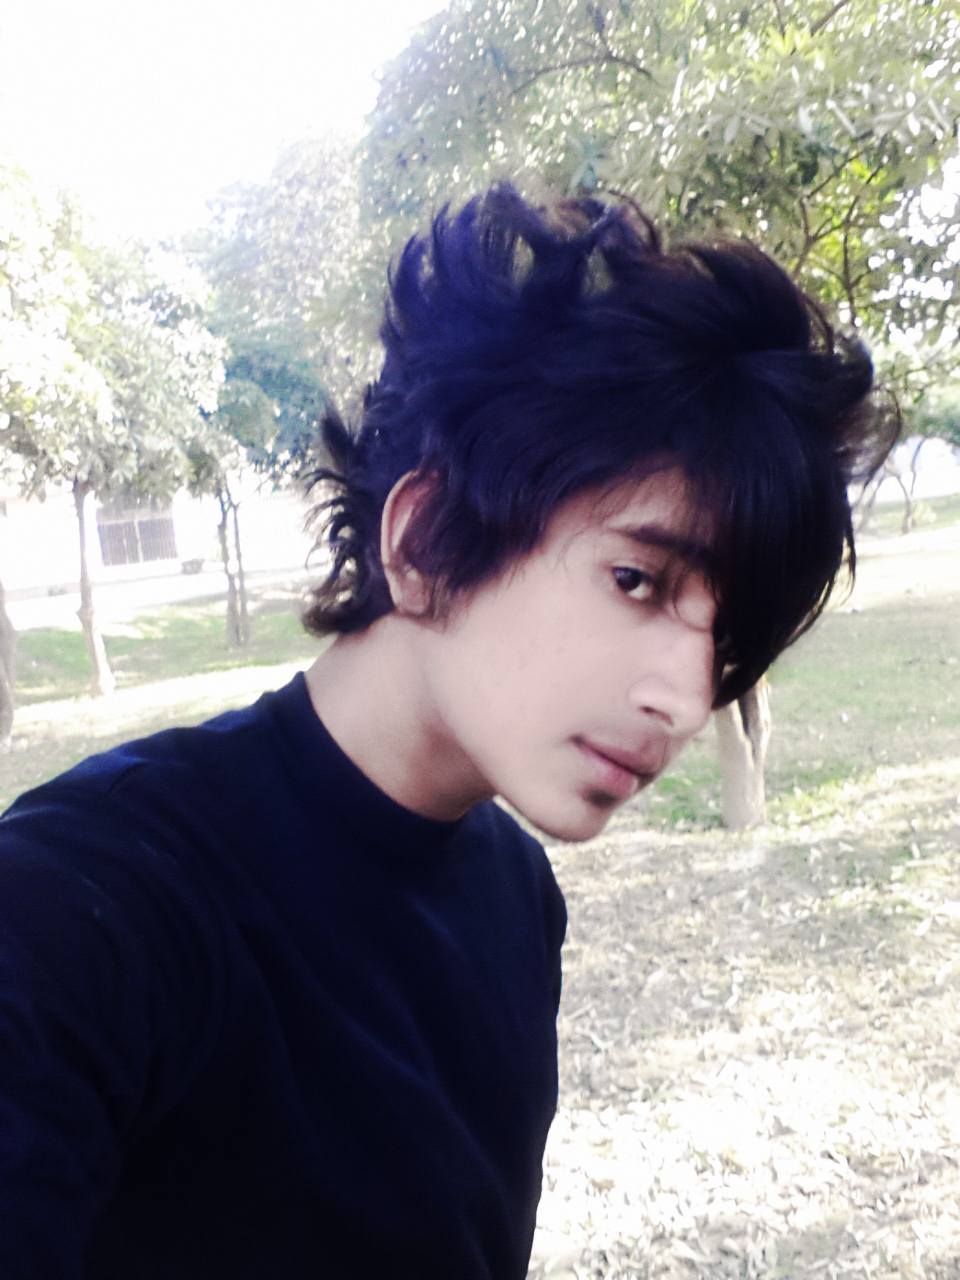 Shahabaz Qureshi - Hot Emo Boy Hair Wallpaper (38256783) - Fanpop